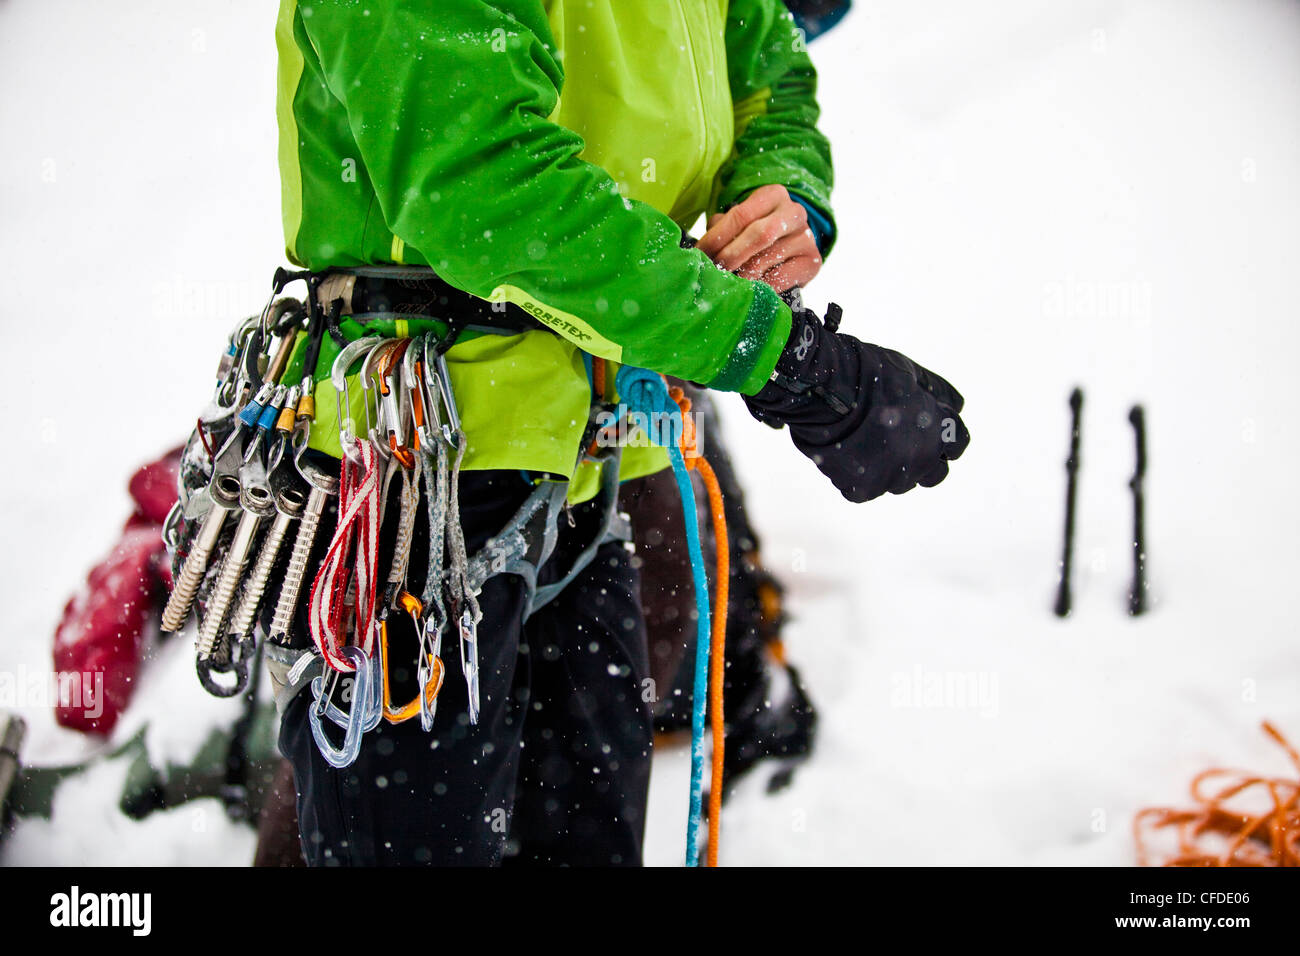 Une femme se prête à l'escalade de glace Moonlight WI4, même Thomas Creek, Kananaskis, Alberta, Canada Banque D'Images